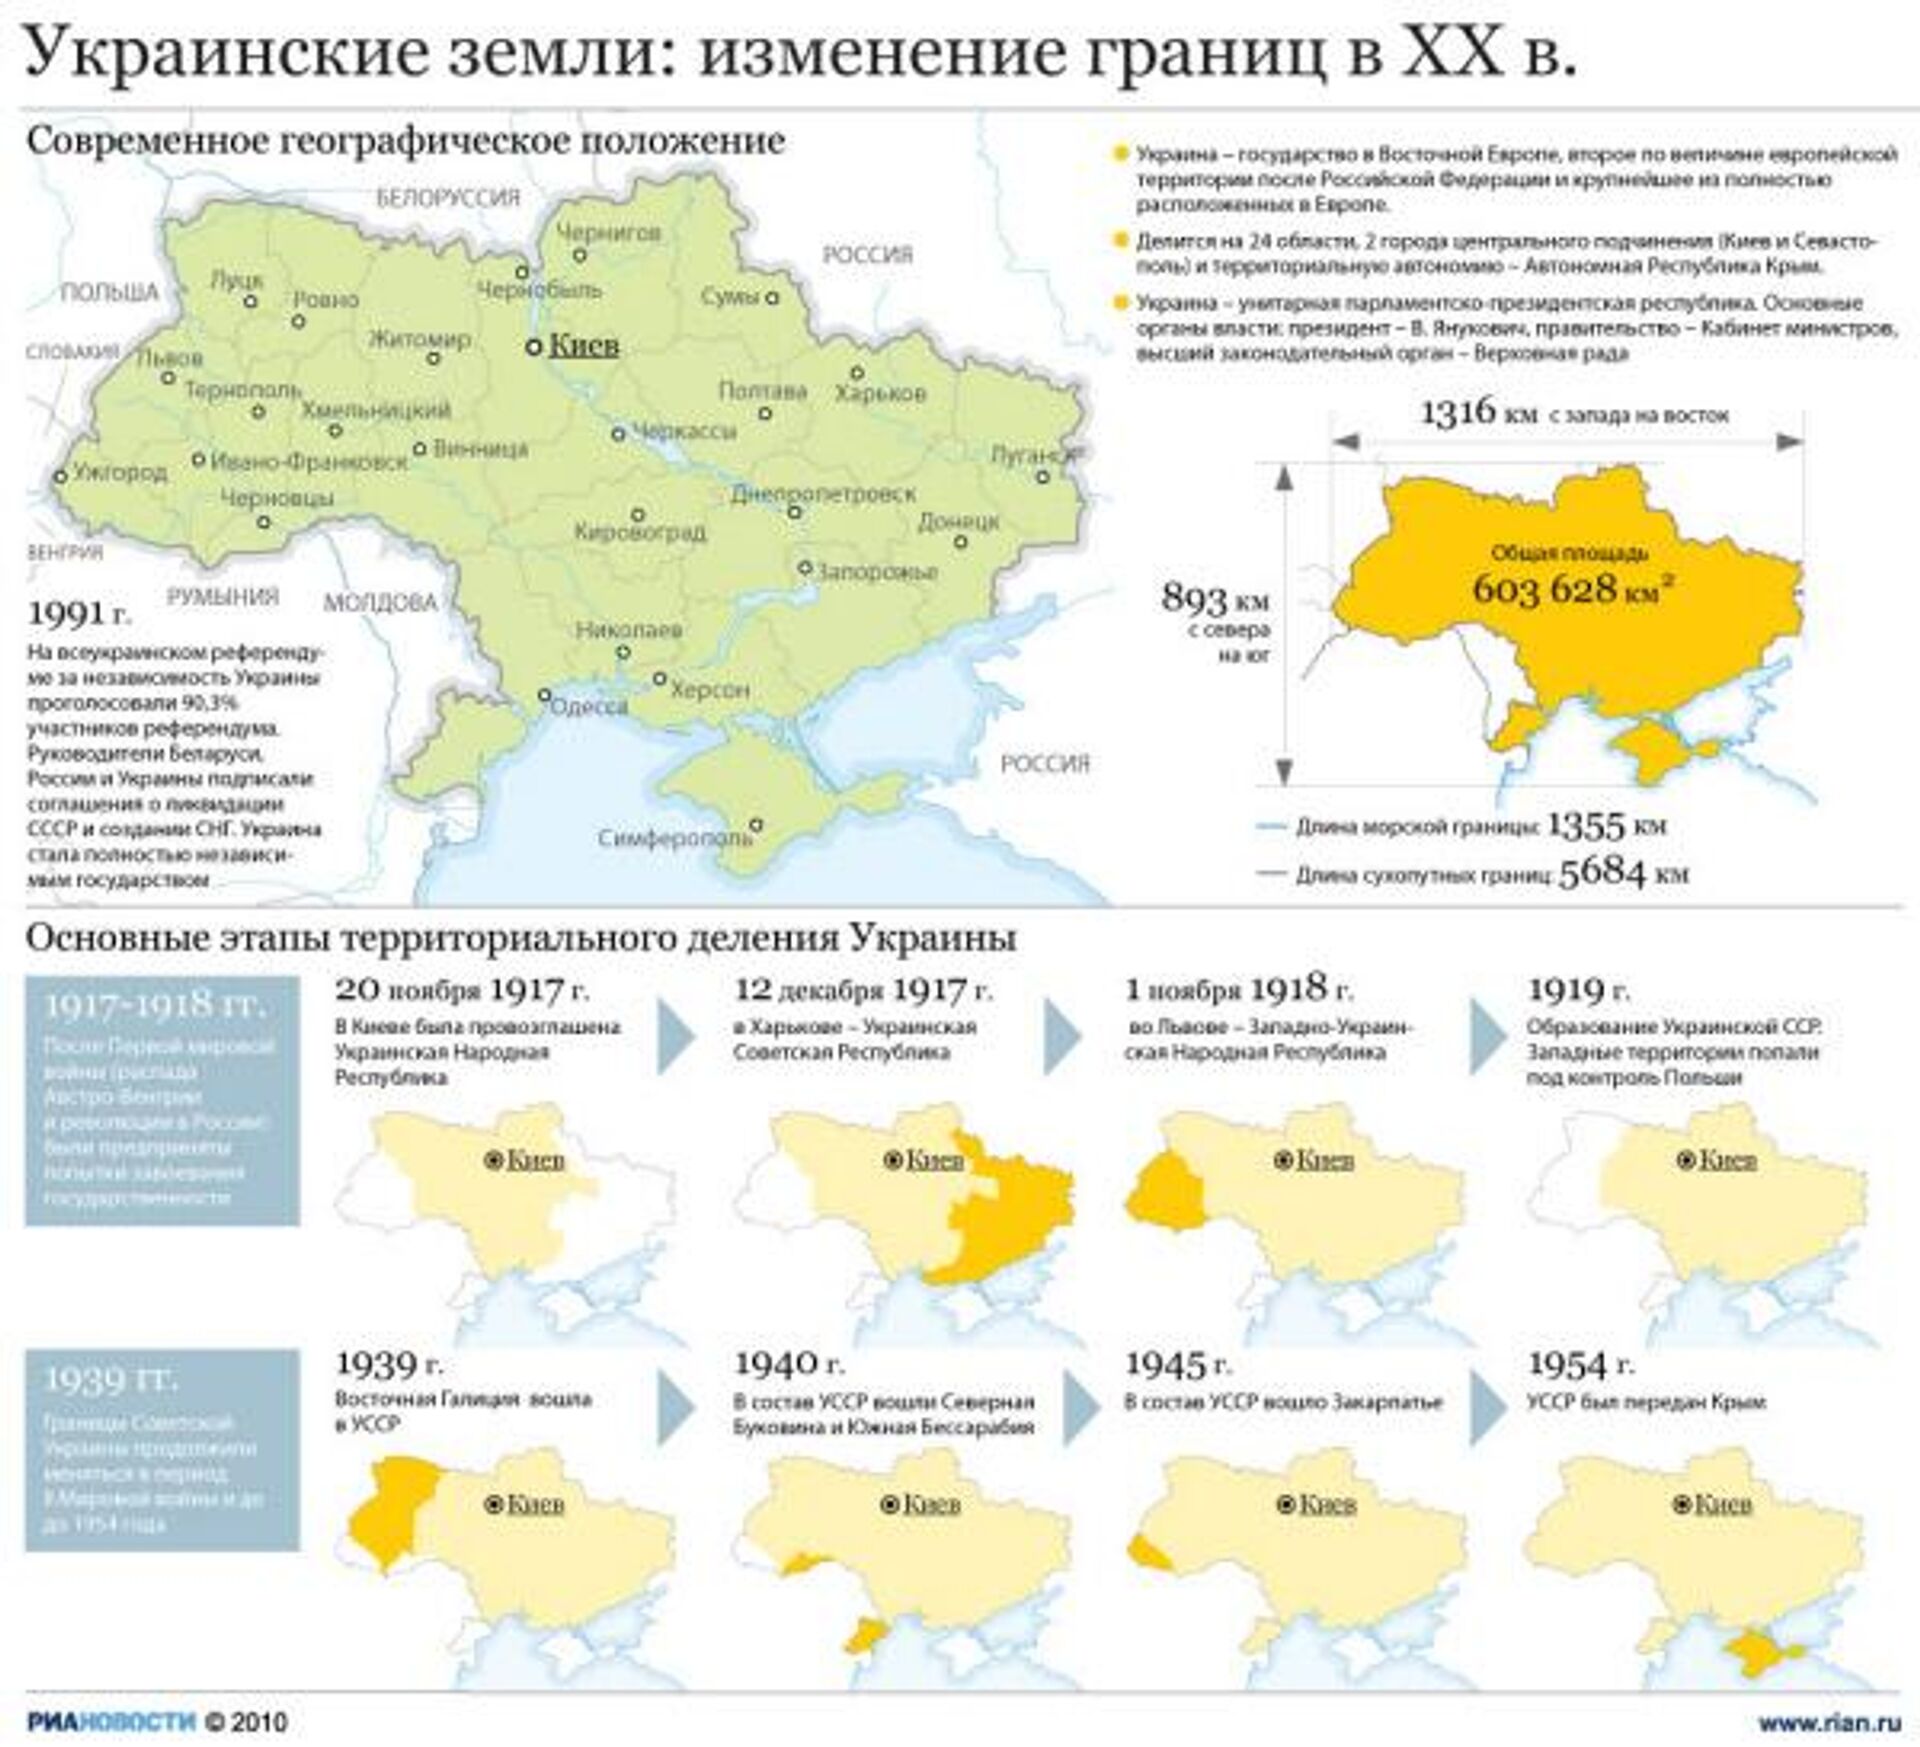 Изменение границ дома. Территория Украины до 1917 года. Границы Украины до 1917 года. Территория Украины в 1917 году. Территория Украины до 1917 года на карте.